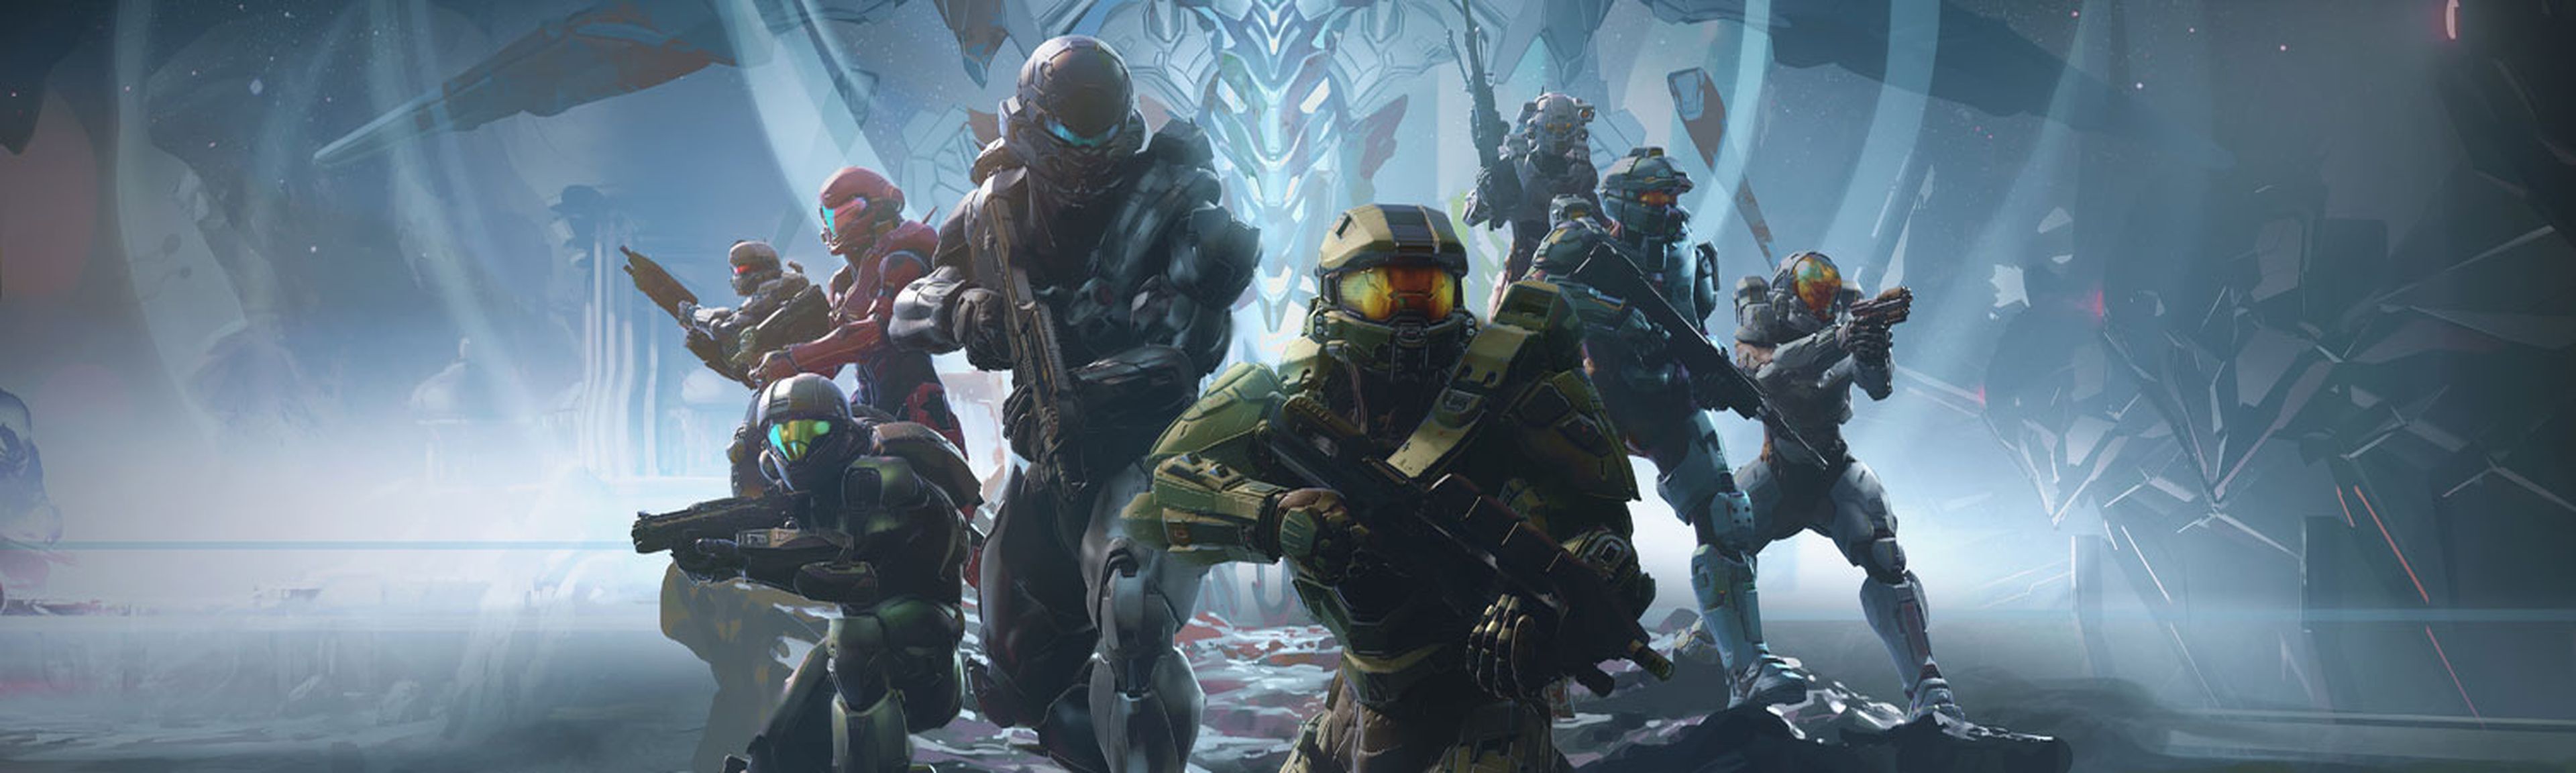 Halo 5 Guardians - ventas